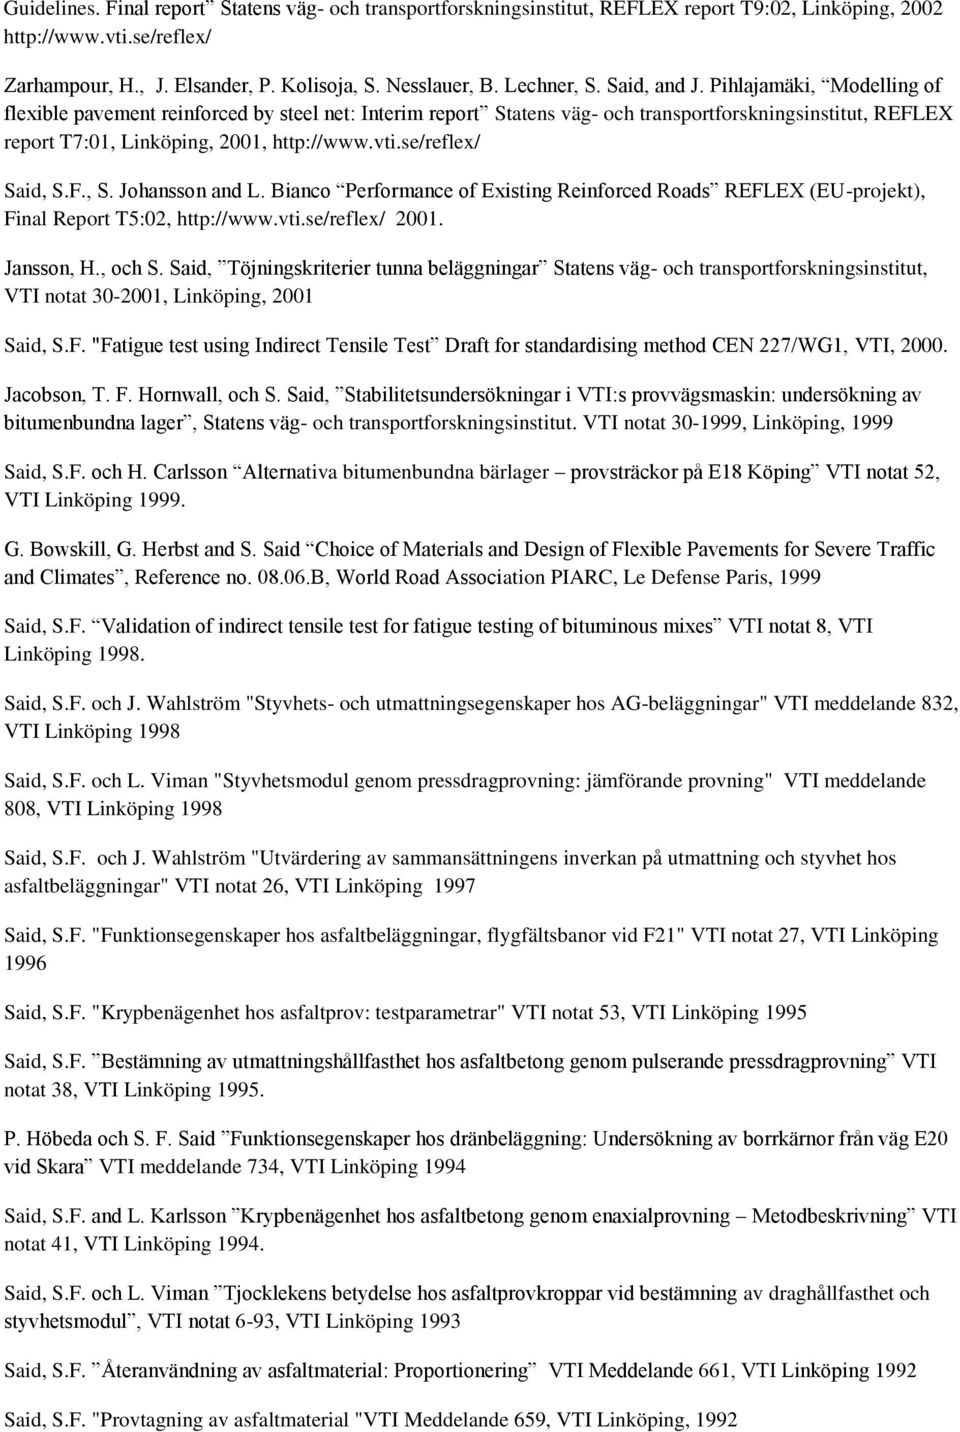 Pihlajamäki, Modelling of flexible pavement reinforced by steel net: Interim report Statens väg- och transportforskningsinstitut, REFLEX report T7:01, Linköping, 2001, http://www.vti.